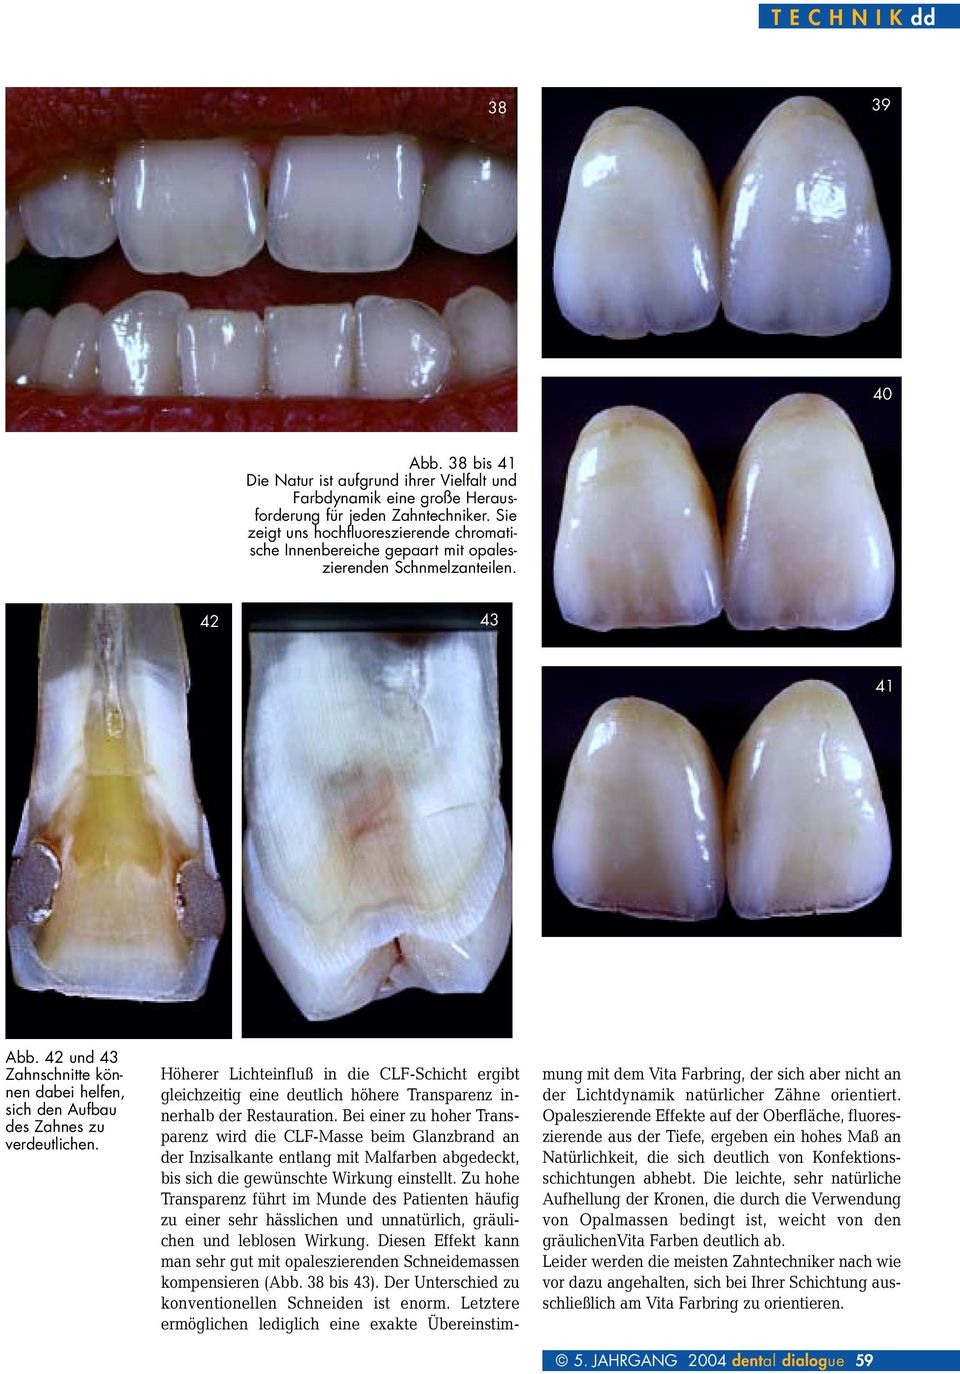 42 und 43 Zahnschnitte können dabei helfen, sich den Aufbau des Zahnes zu verdeutlichen.